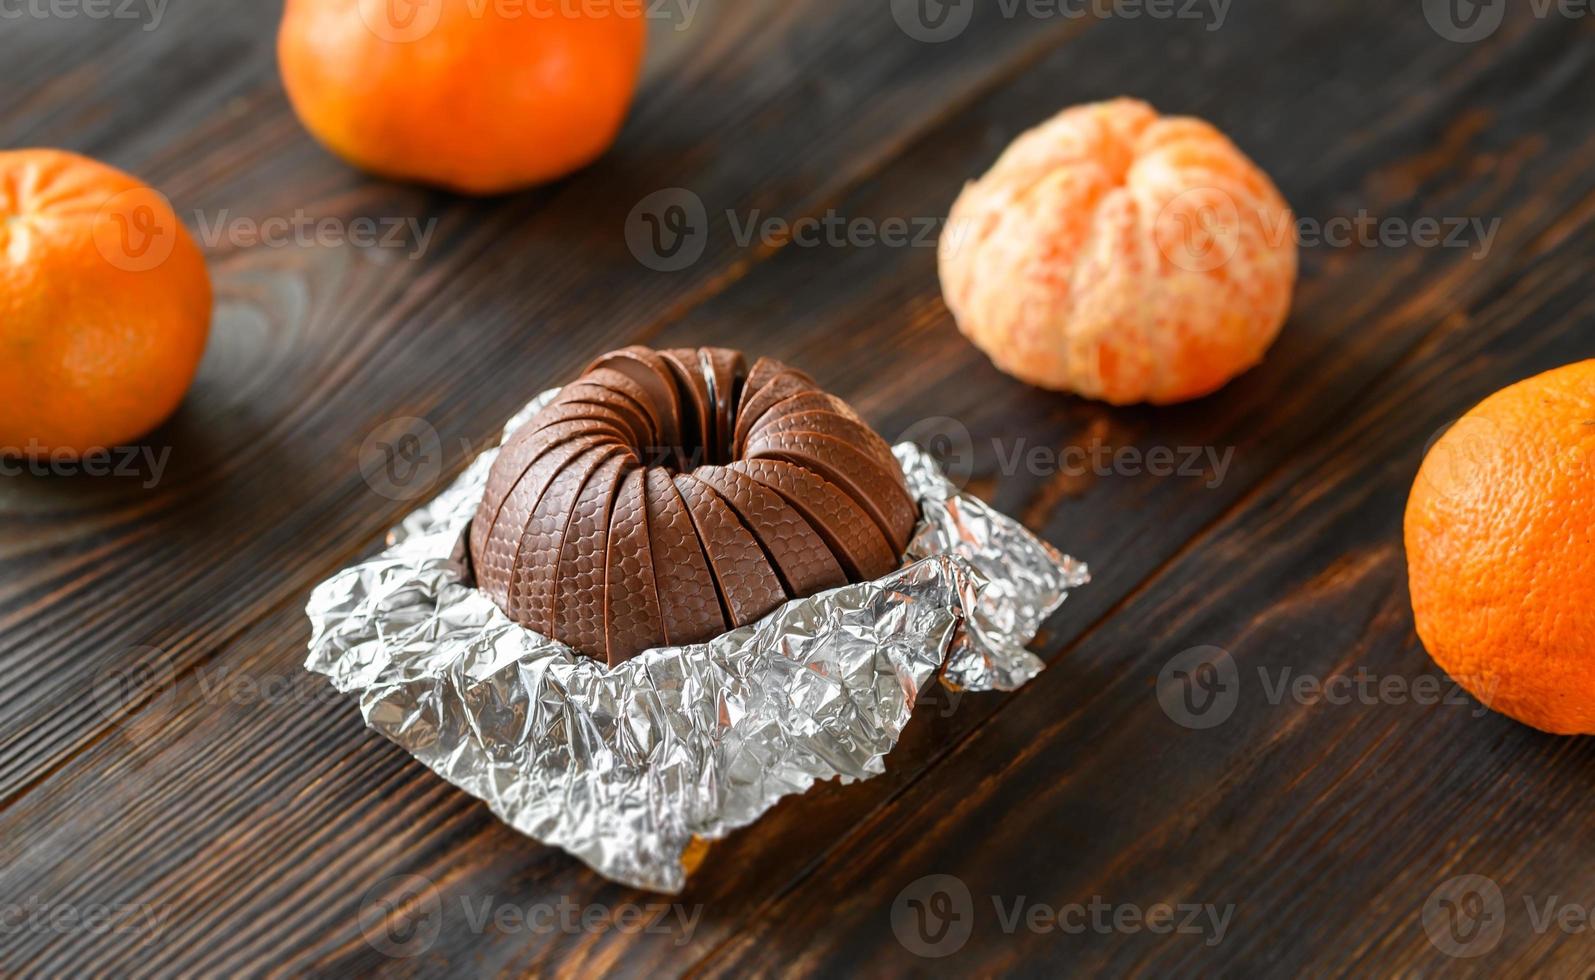 cioccolato fondente all'arancia foto